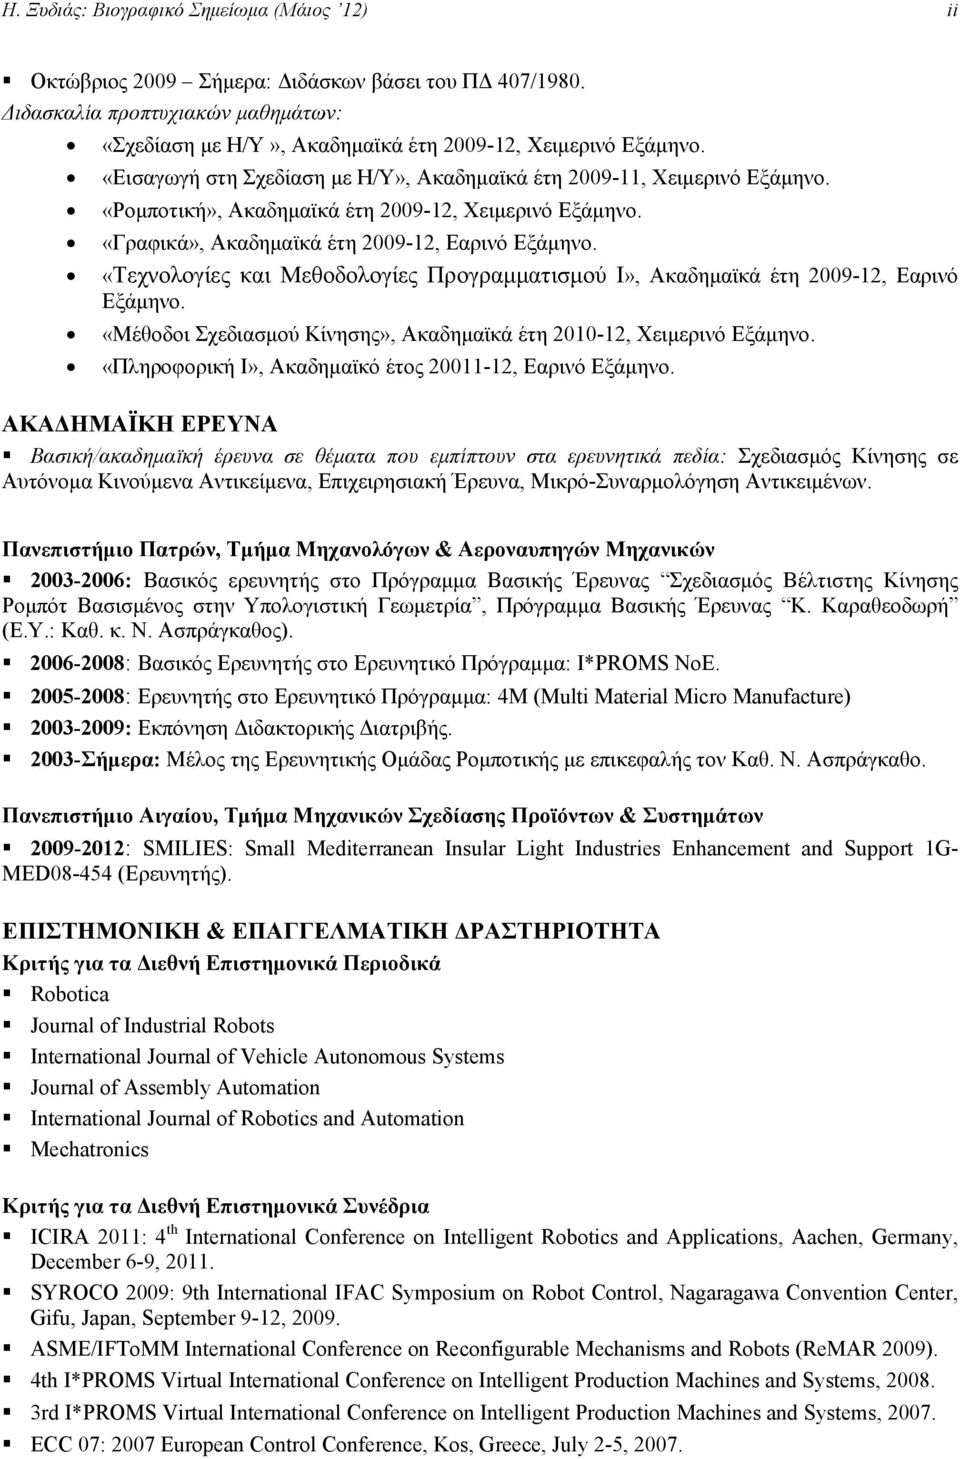 «Τεχνολογίες και Μεθοδολογίες Προγραμματισμού I», Ακαδημαϊκά έτη 2009-12, Εαρινό Εξάμηνο. «Μέθοδοι Σχεδιασμού Κίνησης», Ακαδημαϊκά έτη 2010-12, Χειμερινό Εξάμηνο.